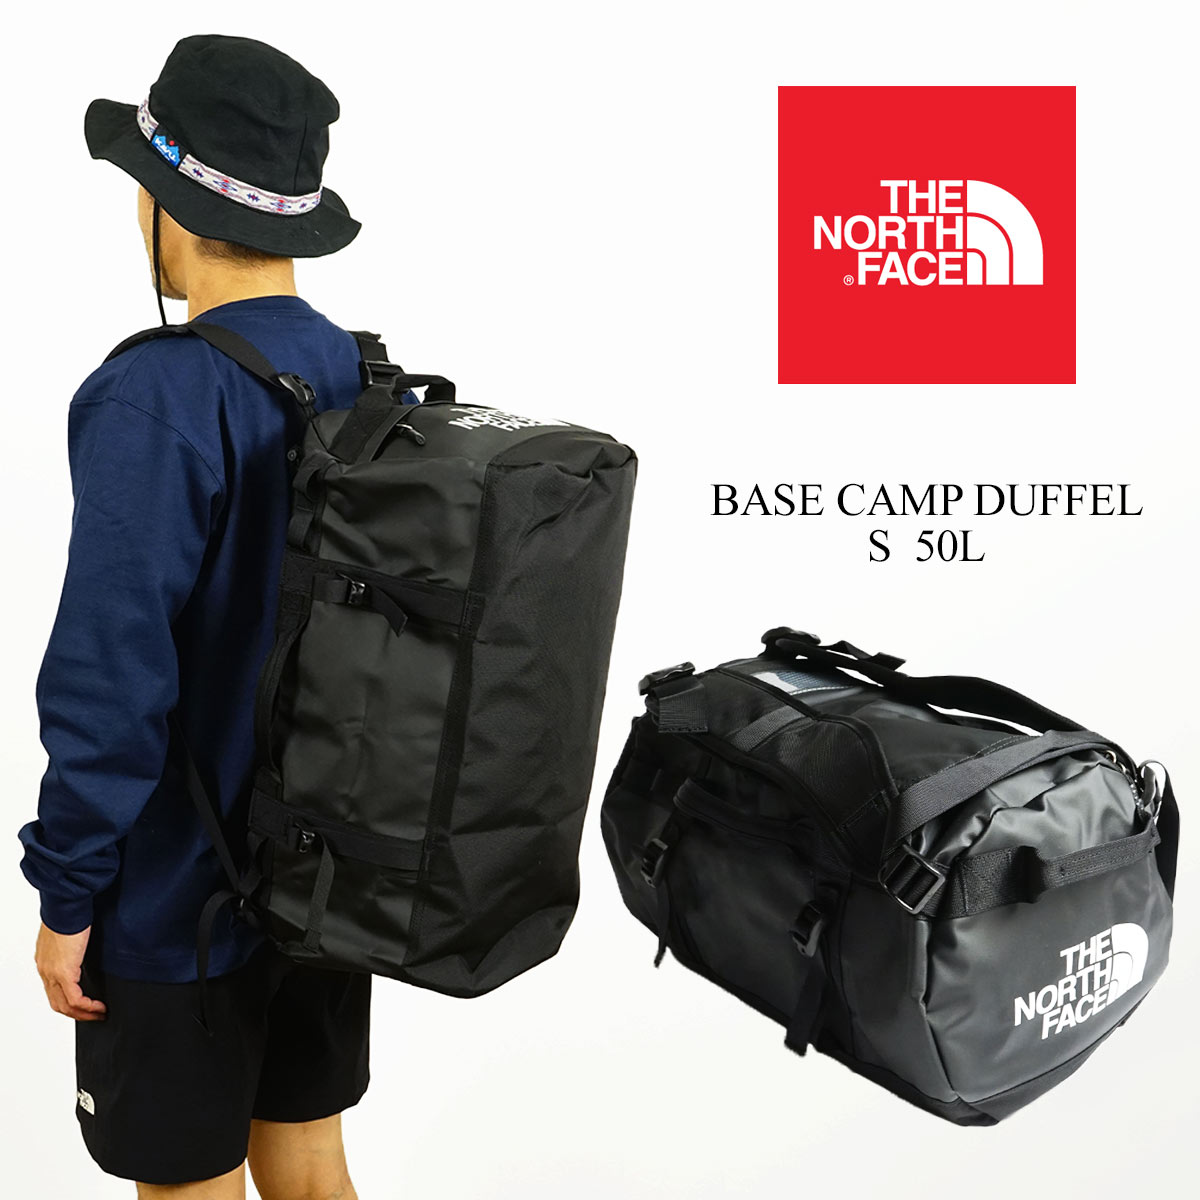  The North Face THE NORTH FACE беж скан pda полный S размер унисекс в Японии не продается большая спортивная сумка барабанная сумка 